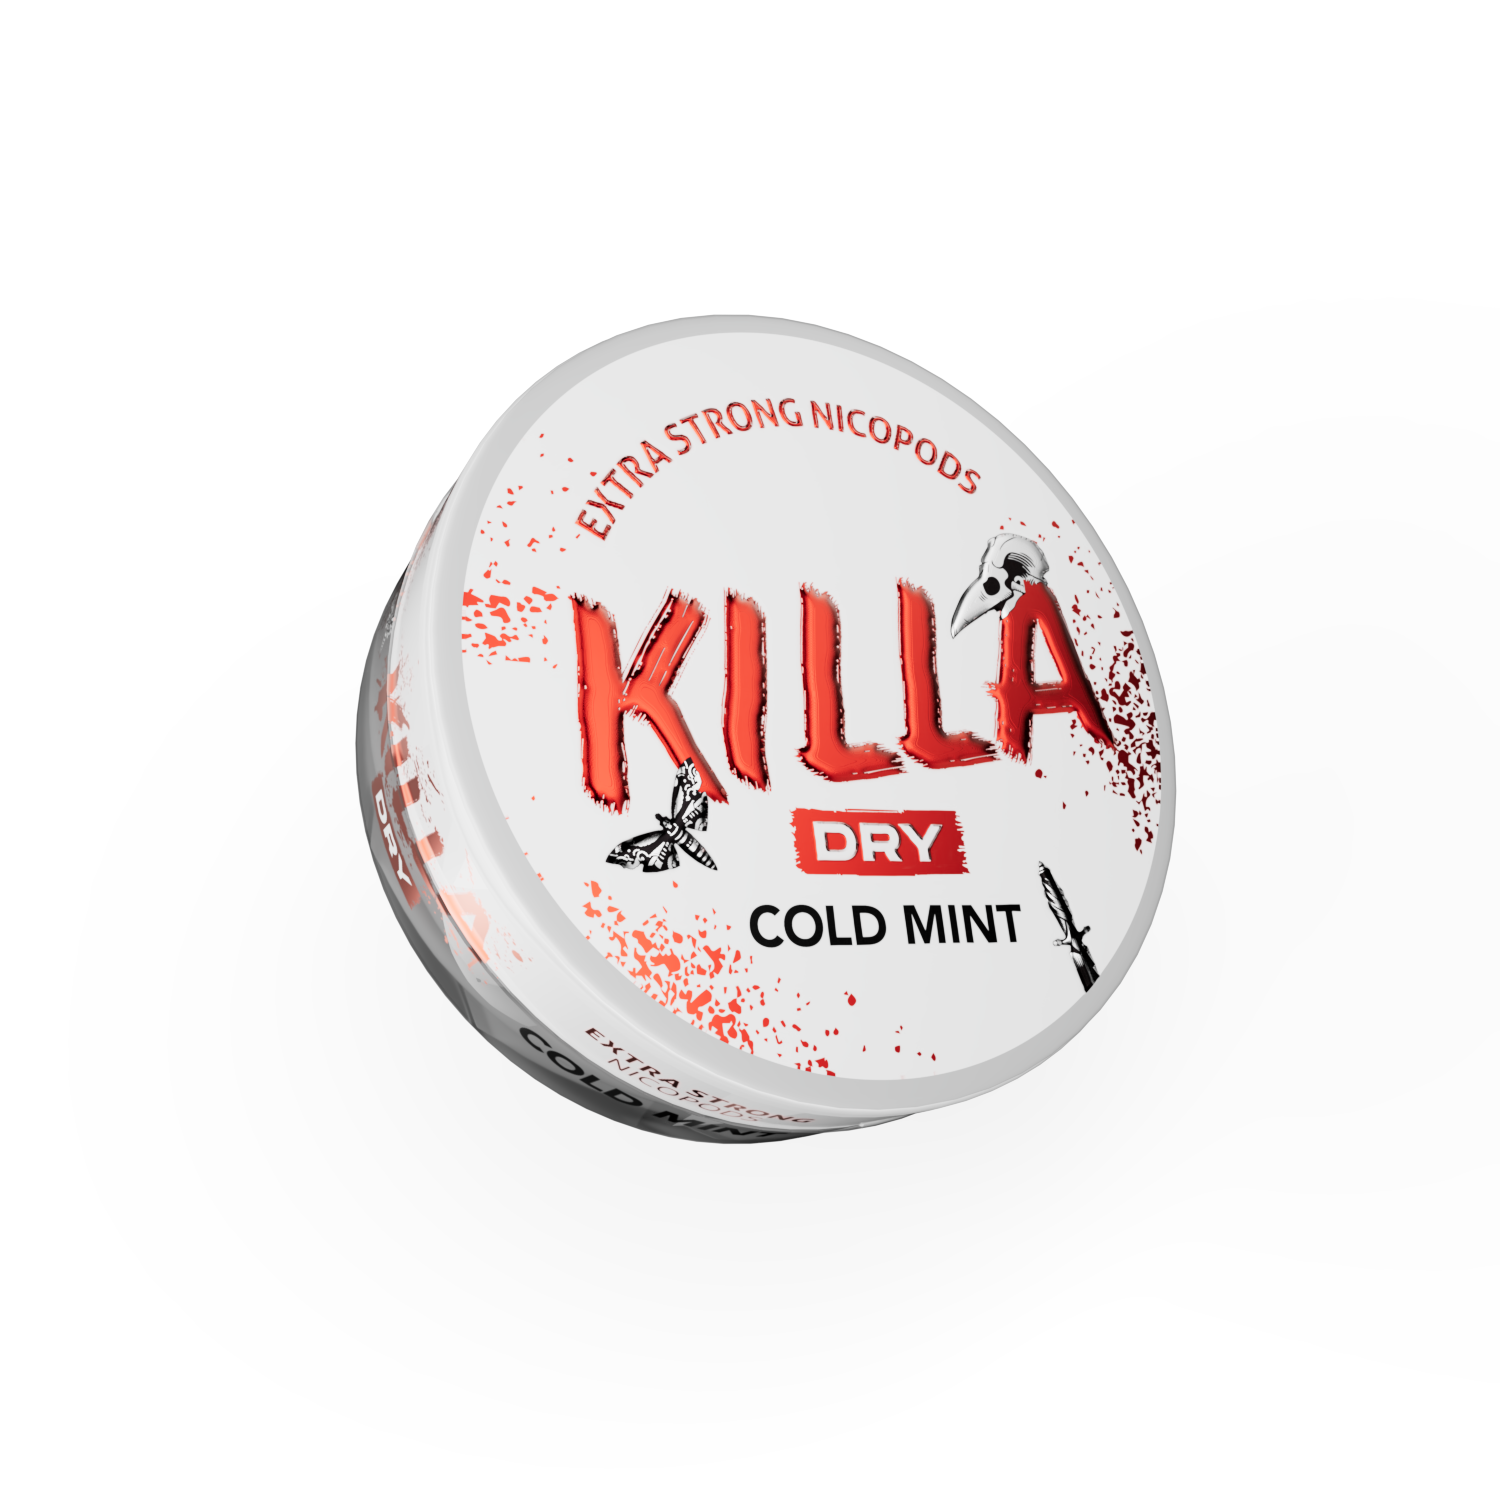 Killa_Dry_ColdMint_2_uus